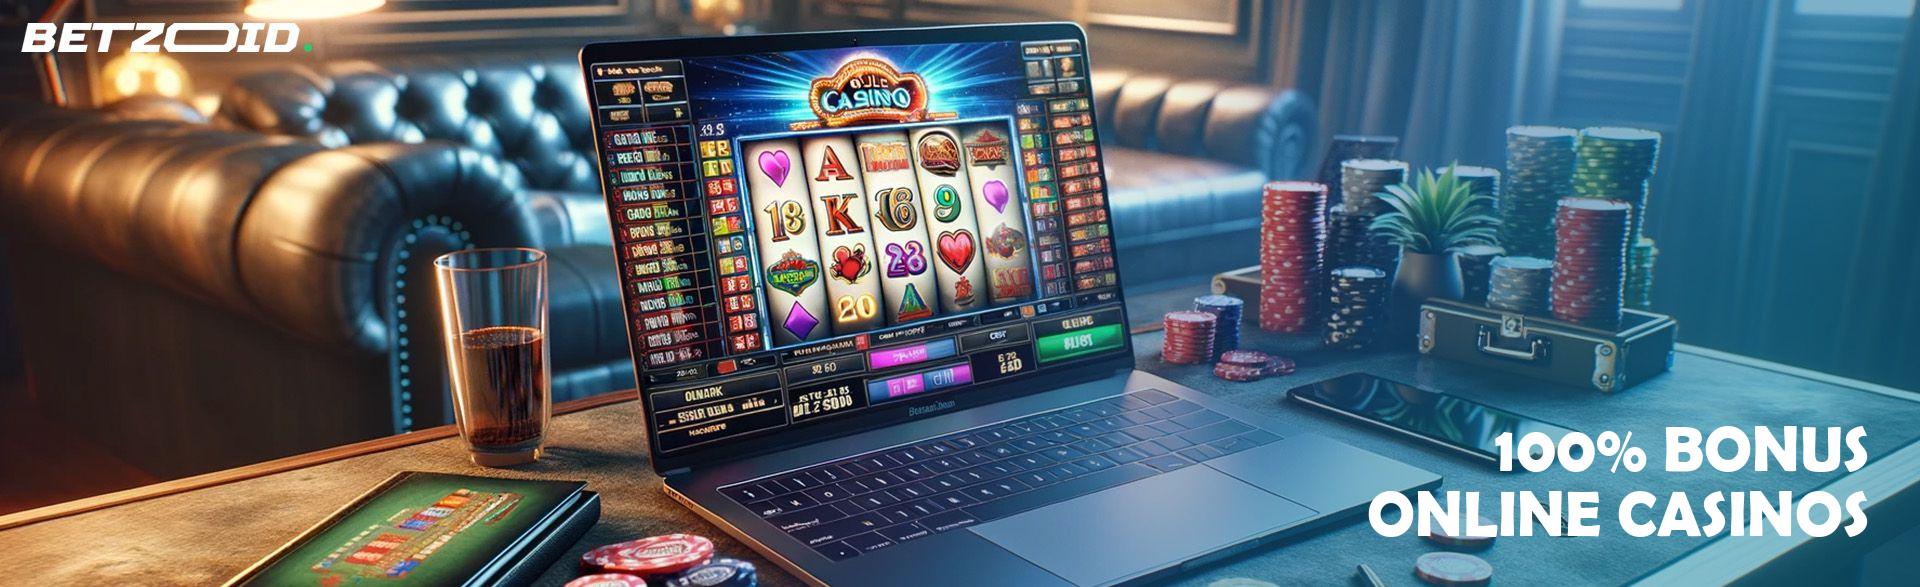 100% Bonus Online Casinos.